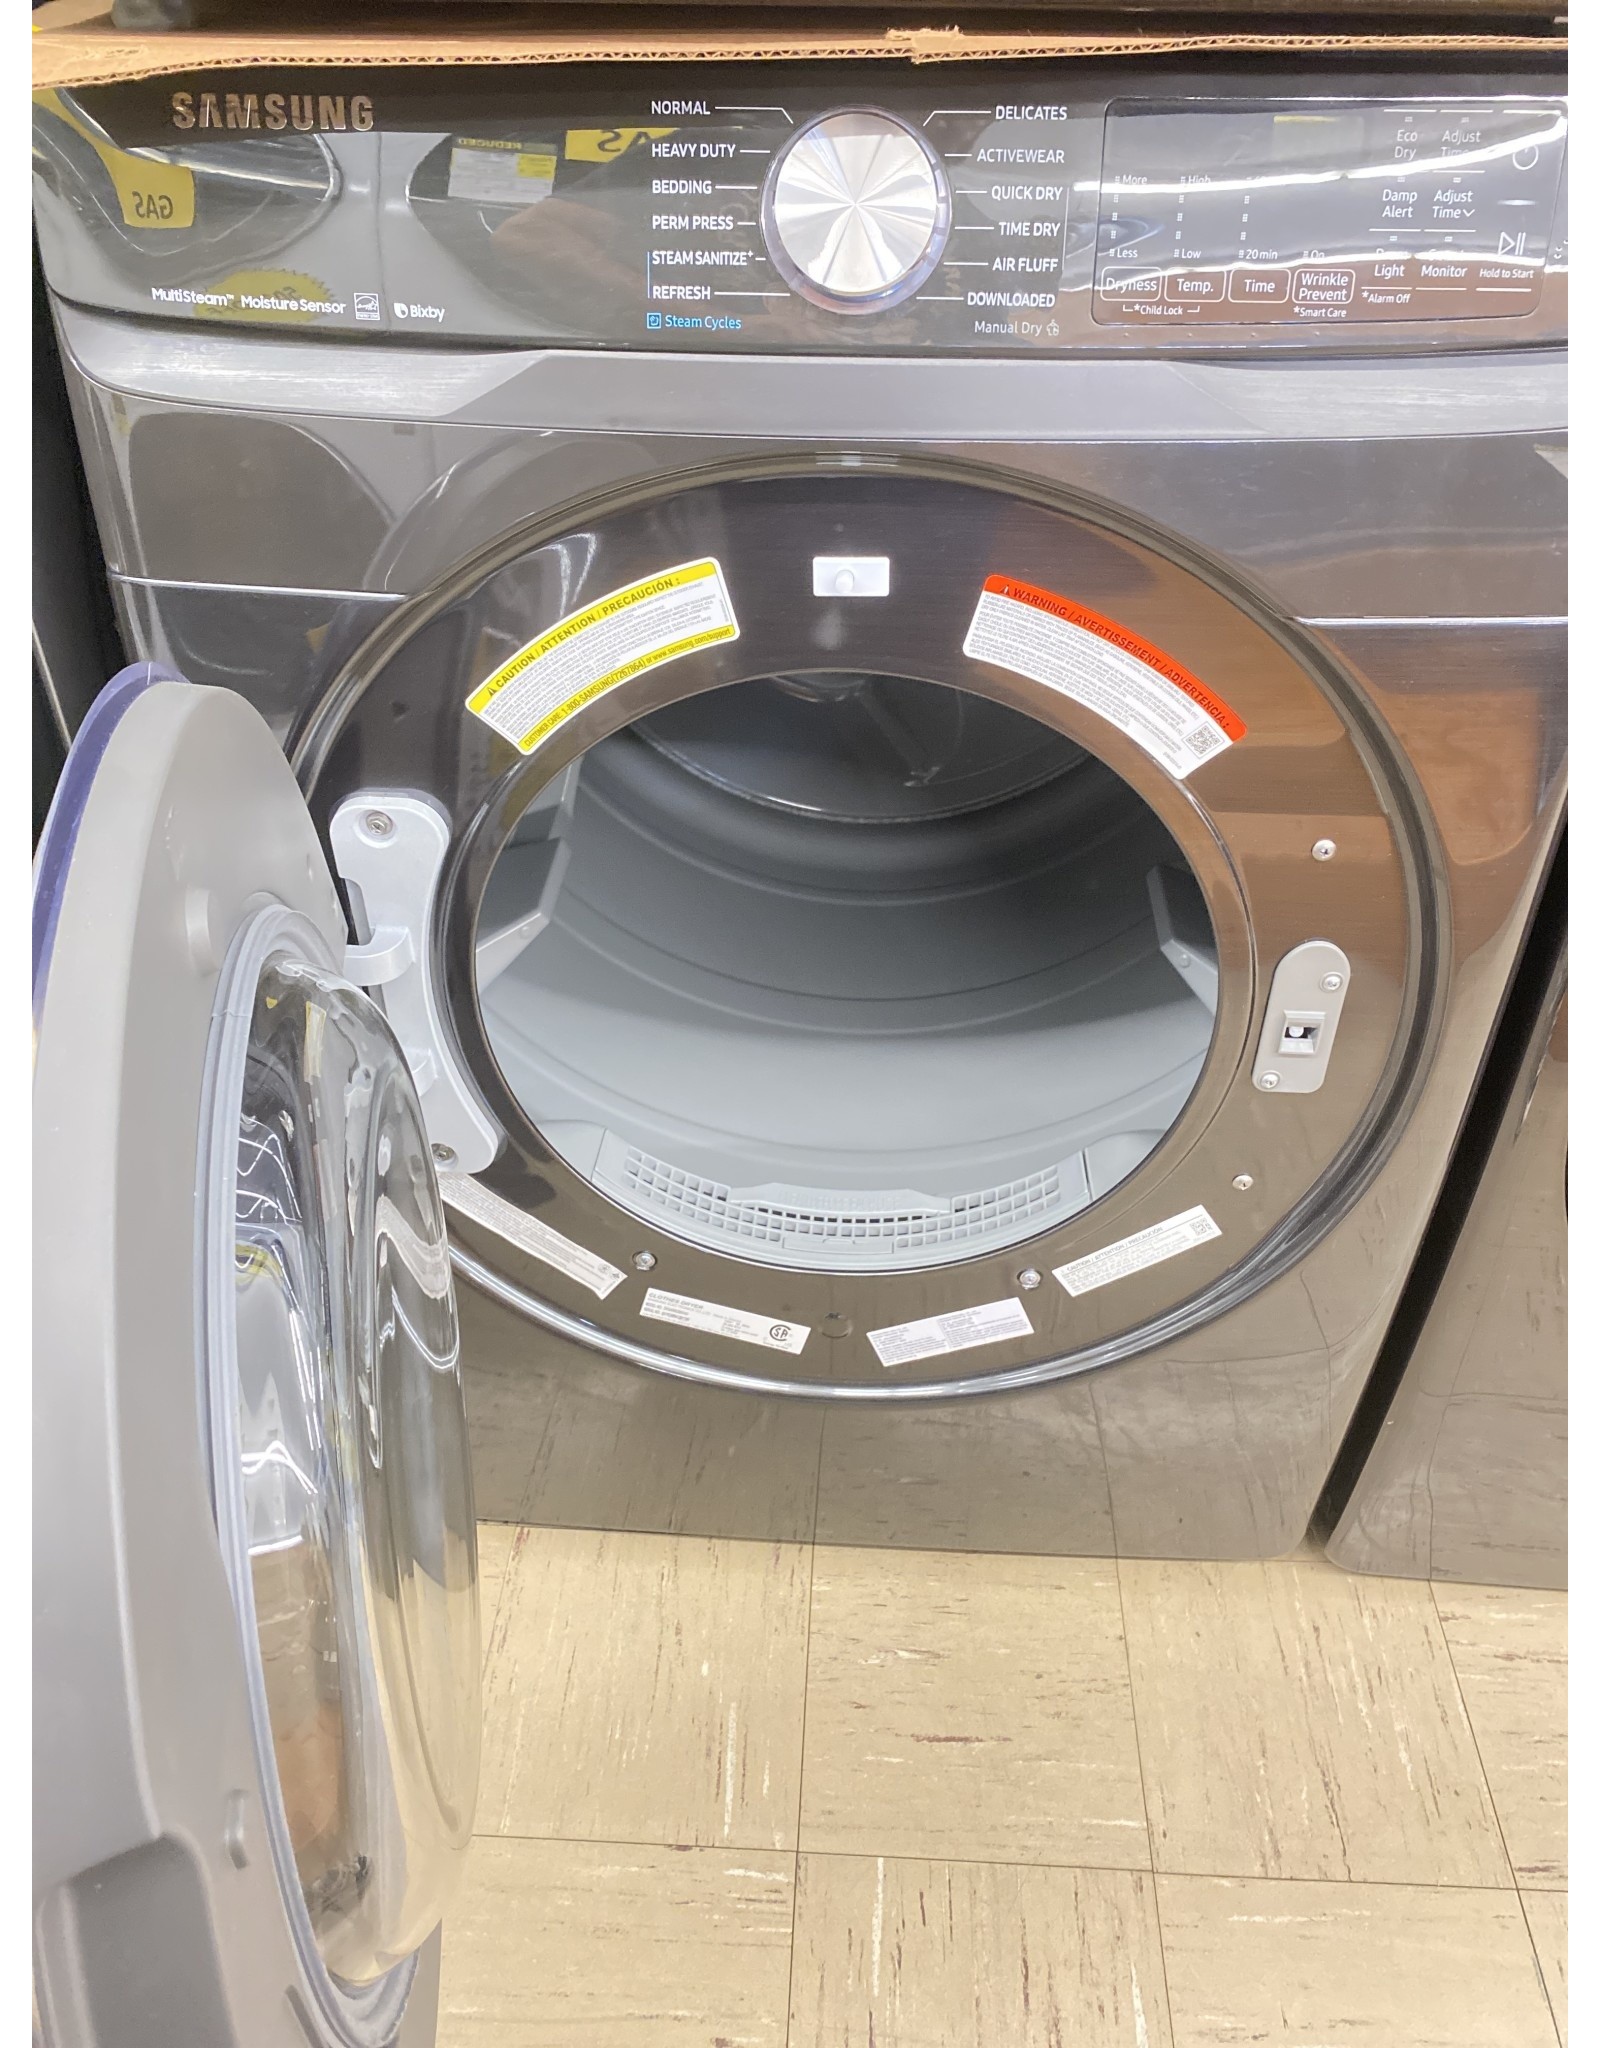 SAMSUNG DVG45R6300V 7.5 cu. ft. Fingerprint Resistant Black Stainless Gas Dryer with Steam Sanitize+